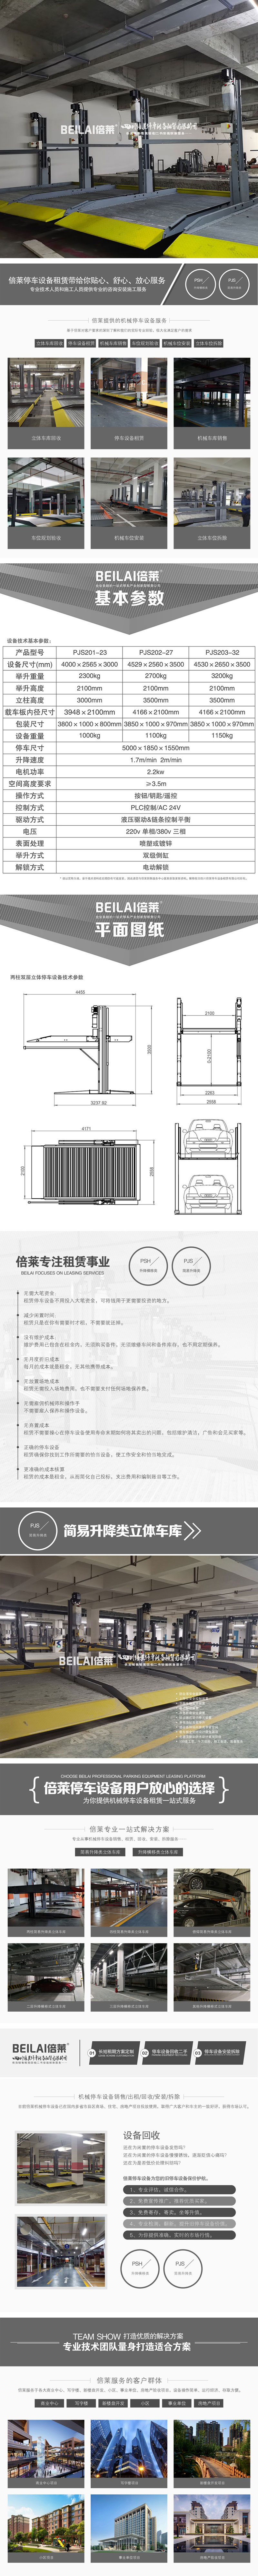 西安簡易升降式立體車庫安裝郫都簡易立體車庫倍萊立體停車